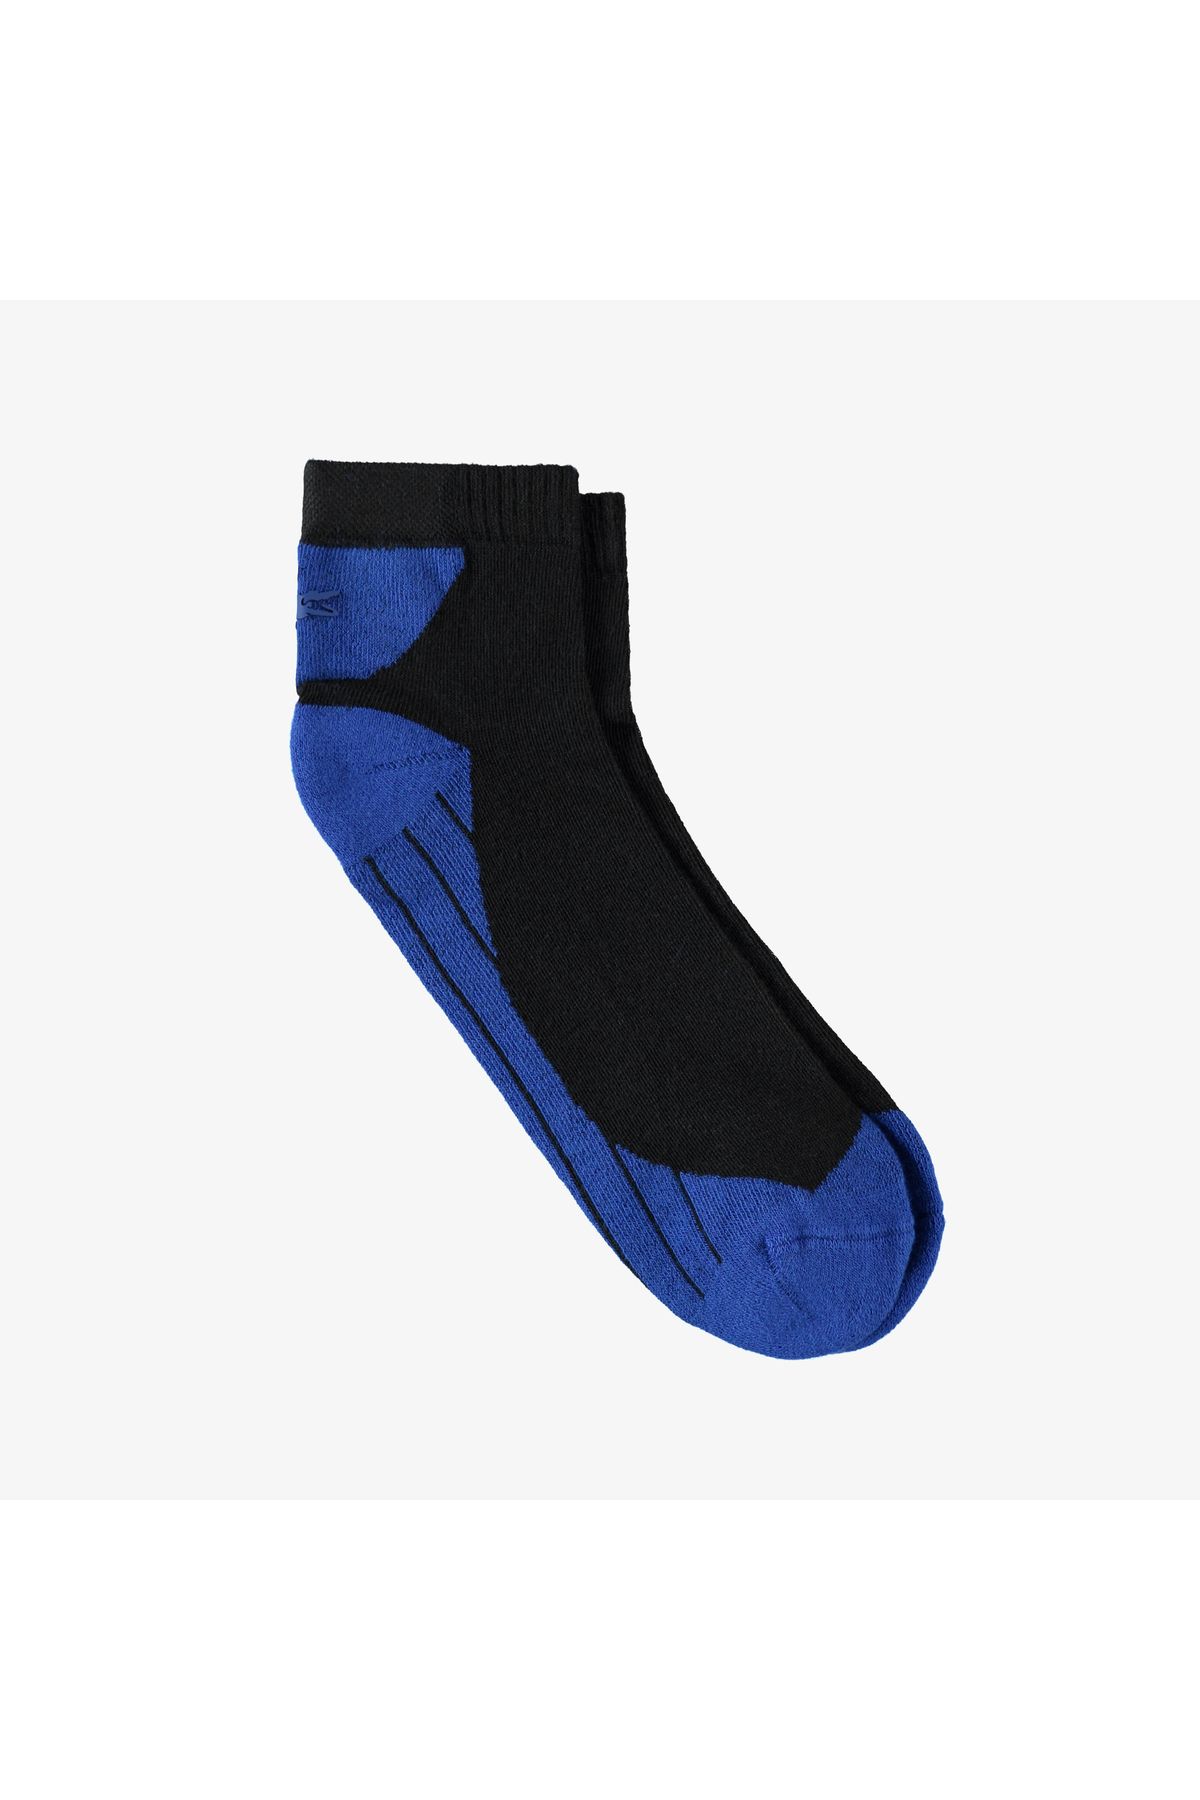 Lacoste Unisex Renk Bloklu Mavi Çorap